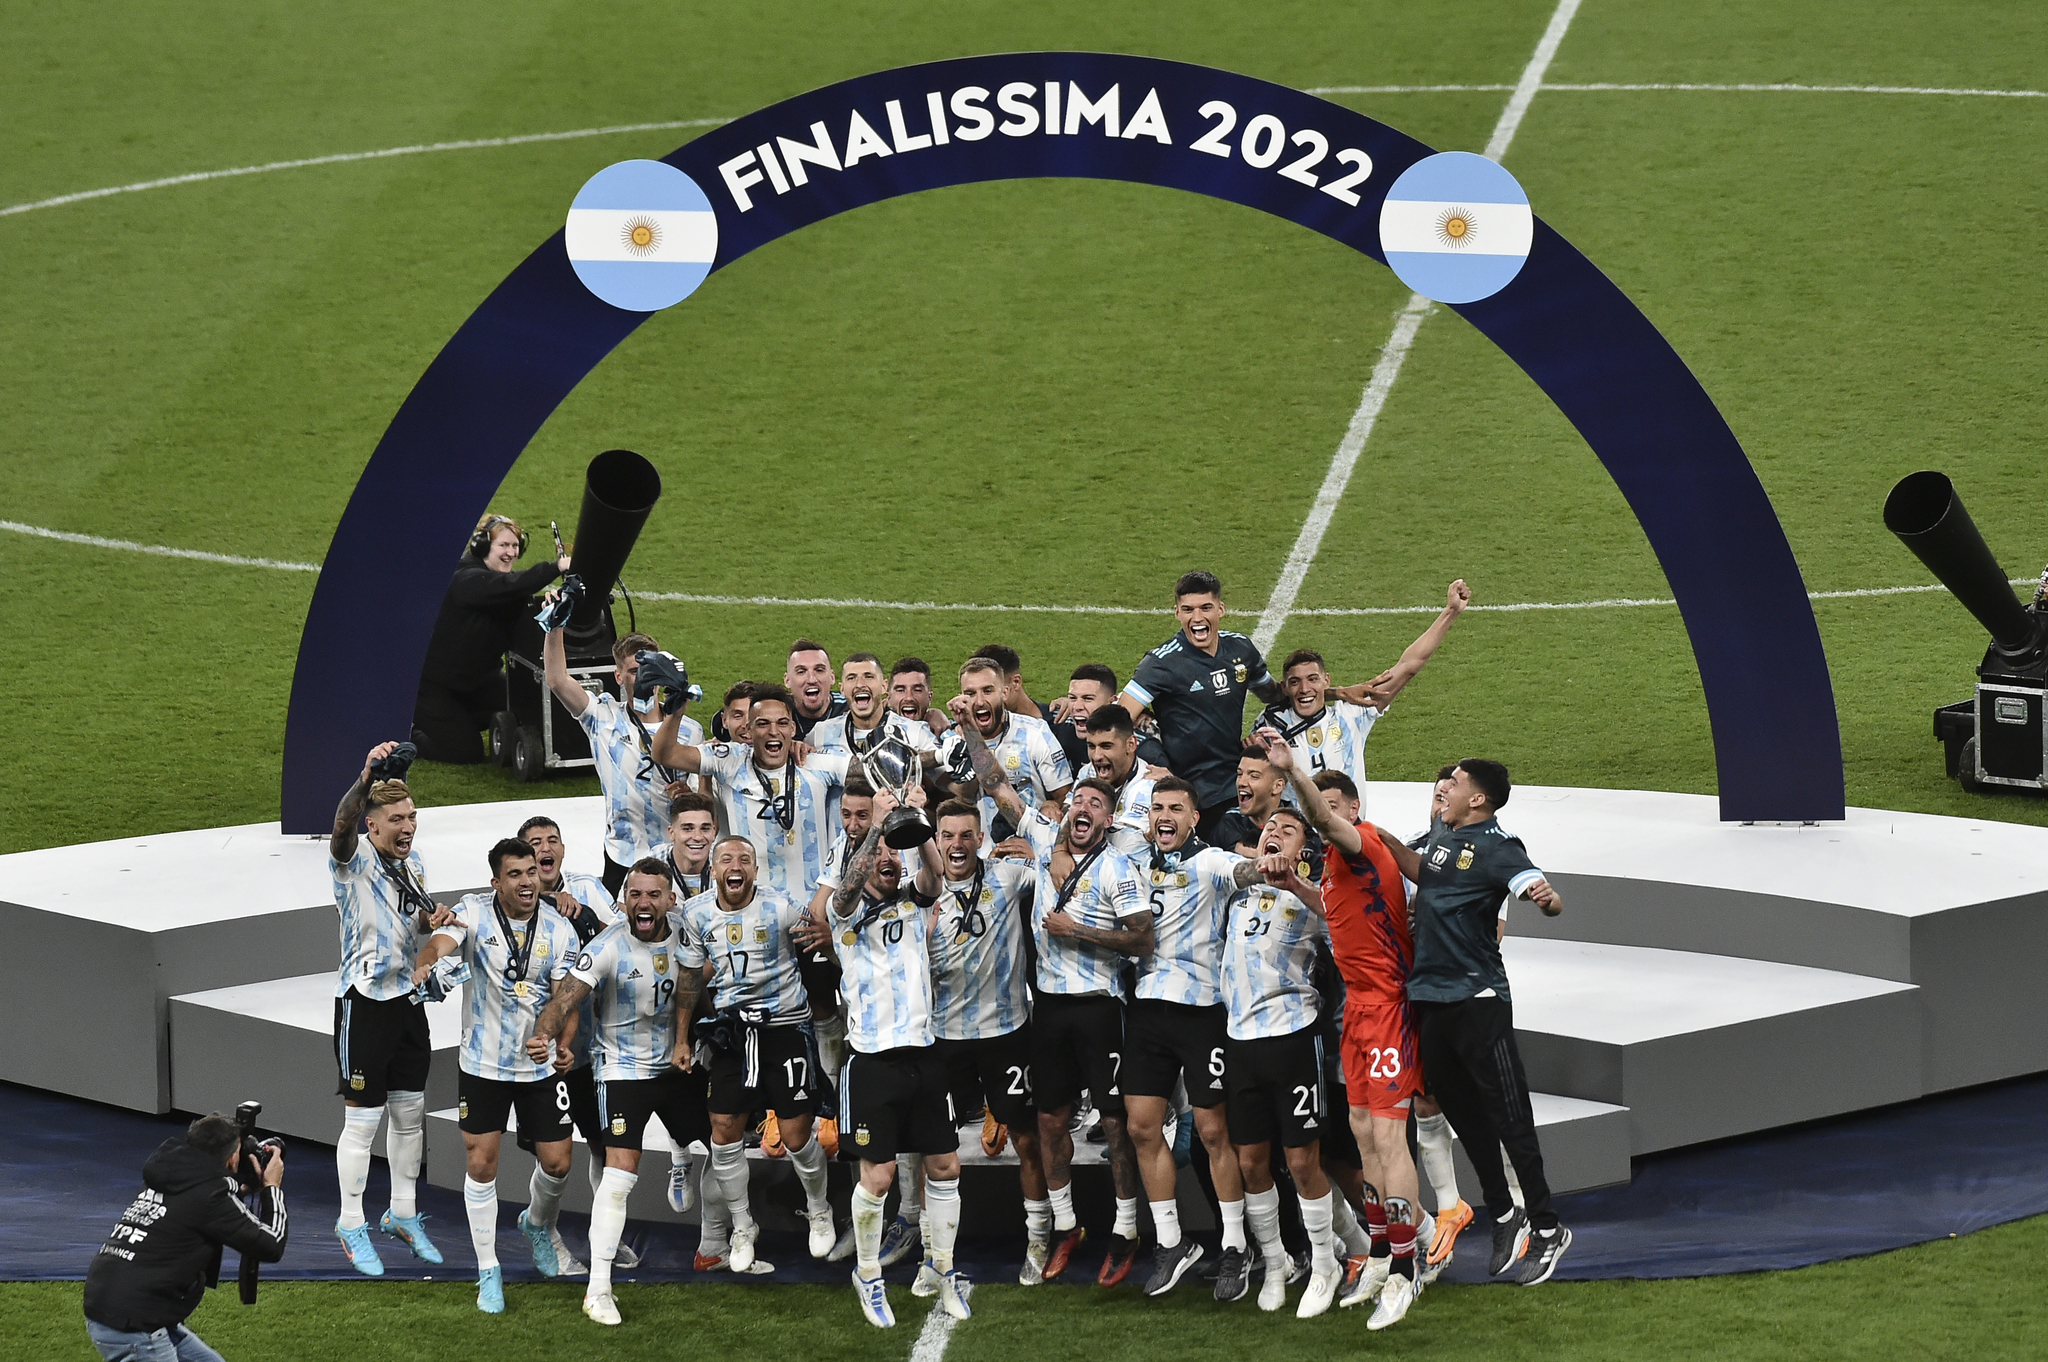 Los jugadores argentinos levanta el trofeo de la Finalissima